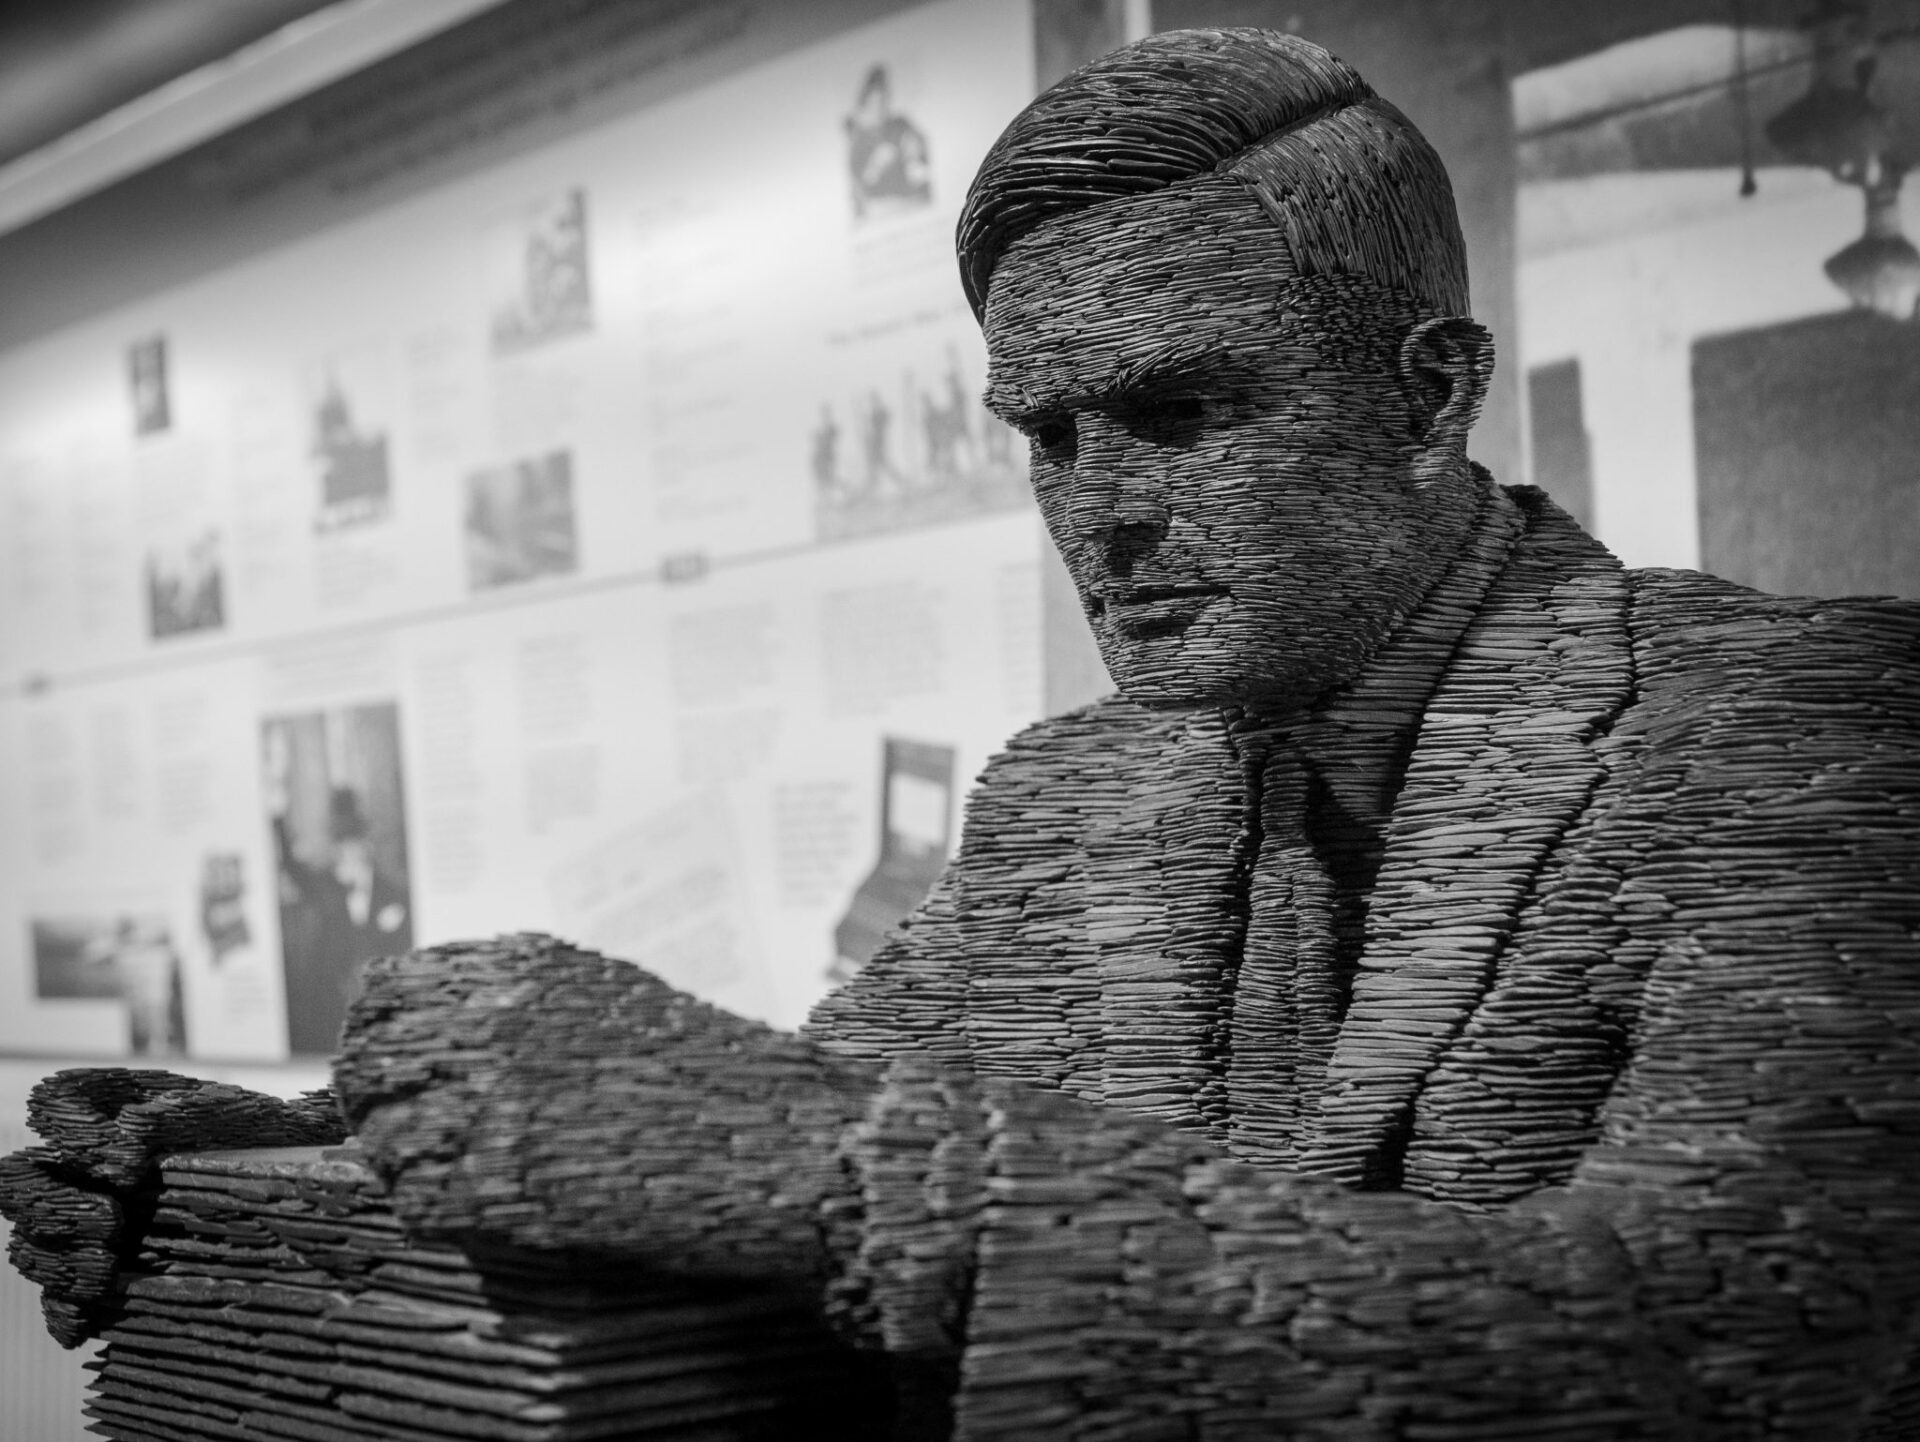 Estátua de Alan Turing